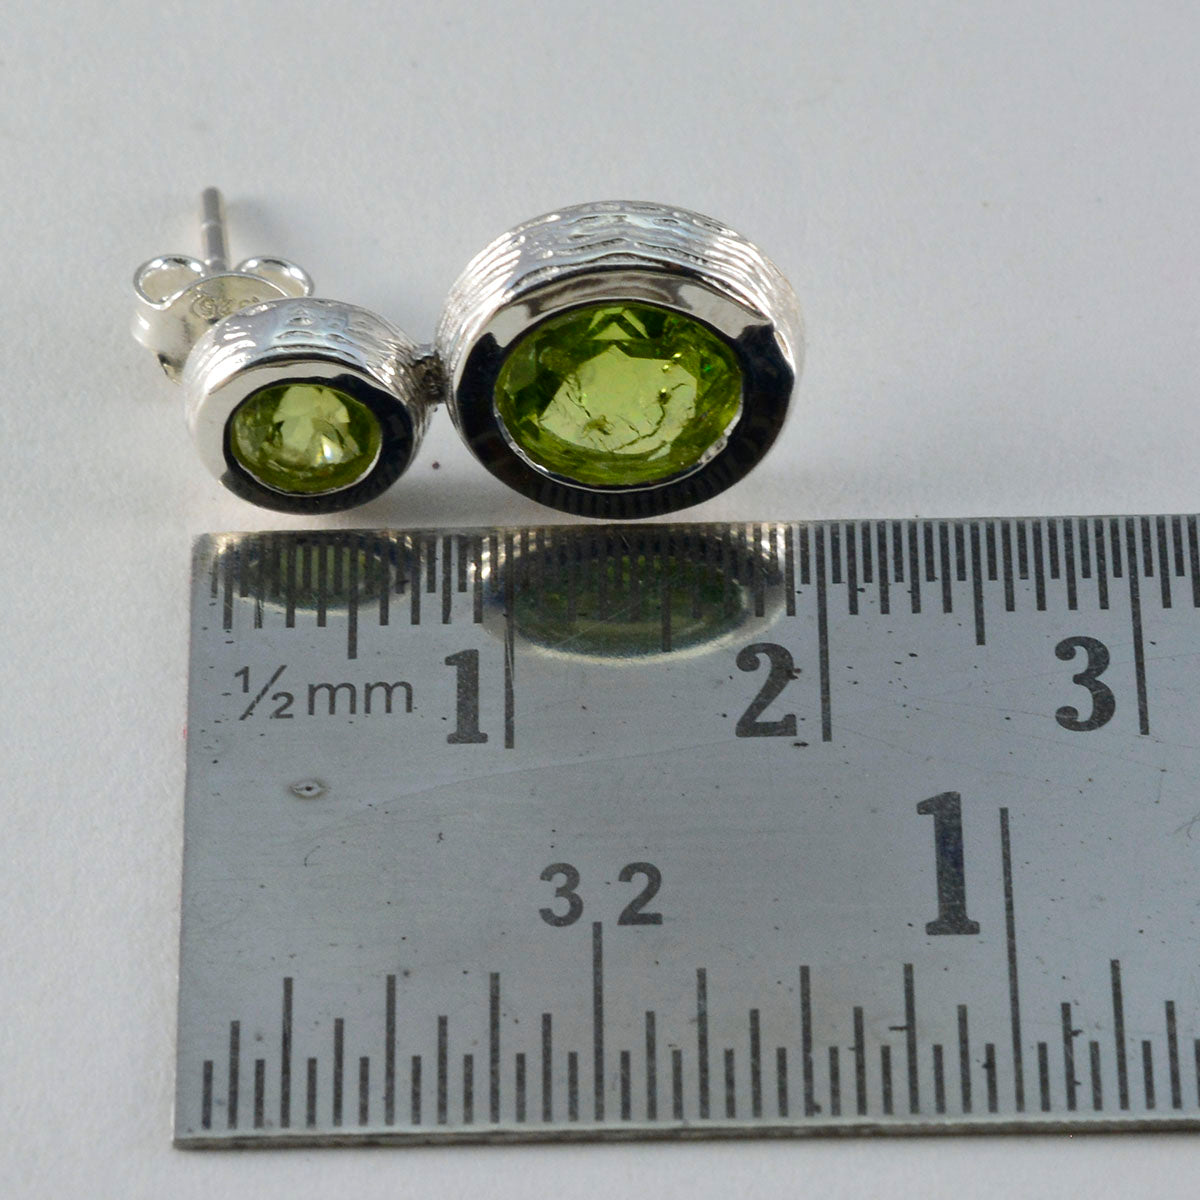 Riyo Pleasing 925 Sterling Silver Earring For Girl Peridot Earring Bezel Setting Green Earring Stud Earring